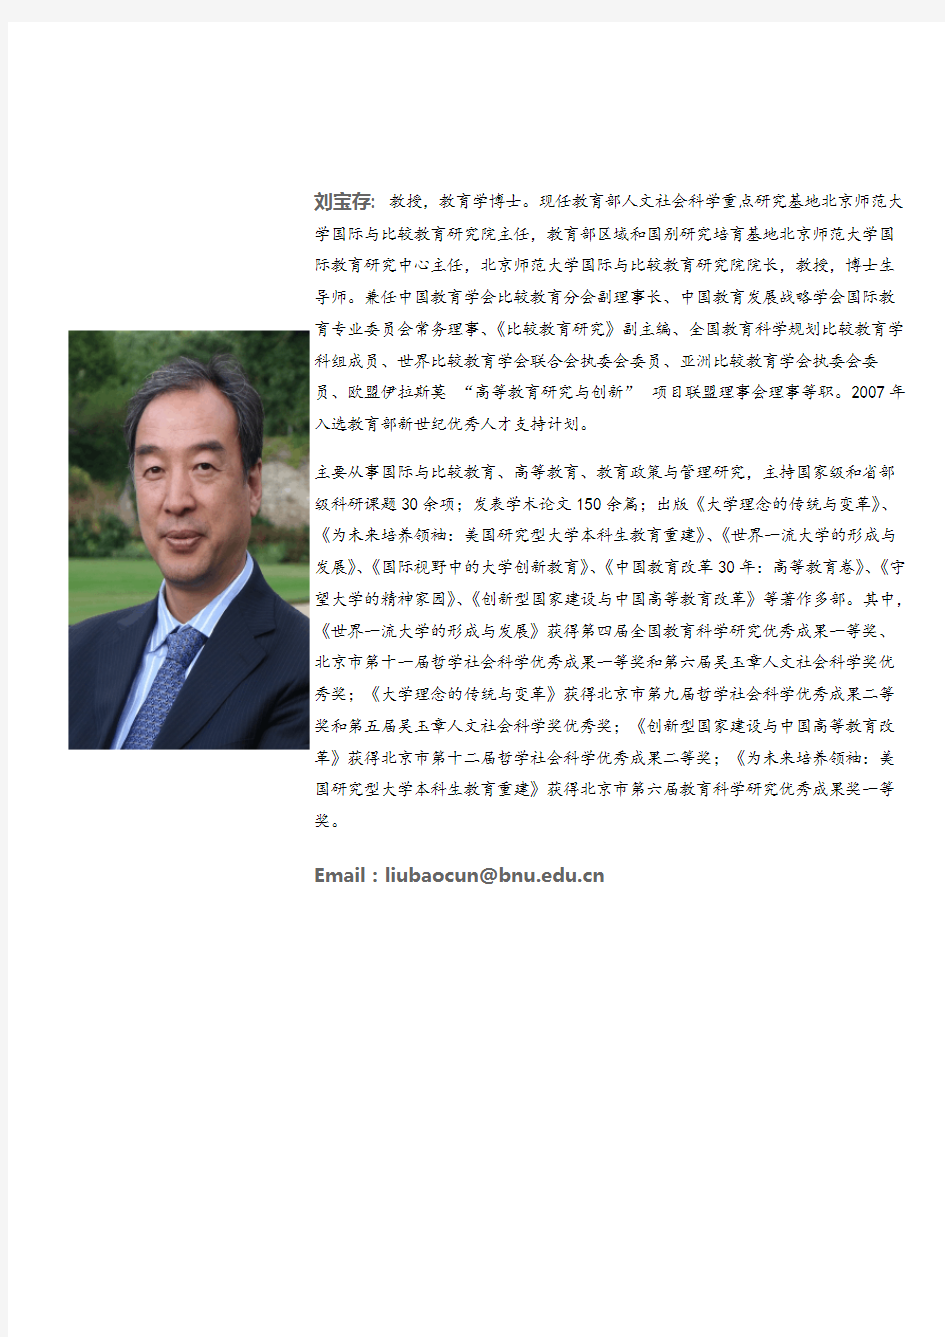 刘宝存教授 - 北京师范大学